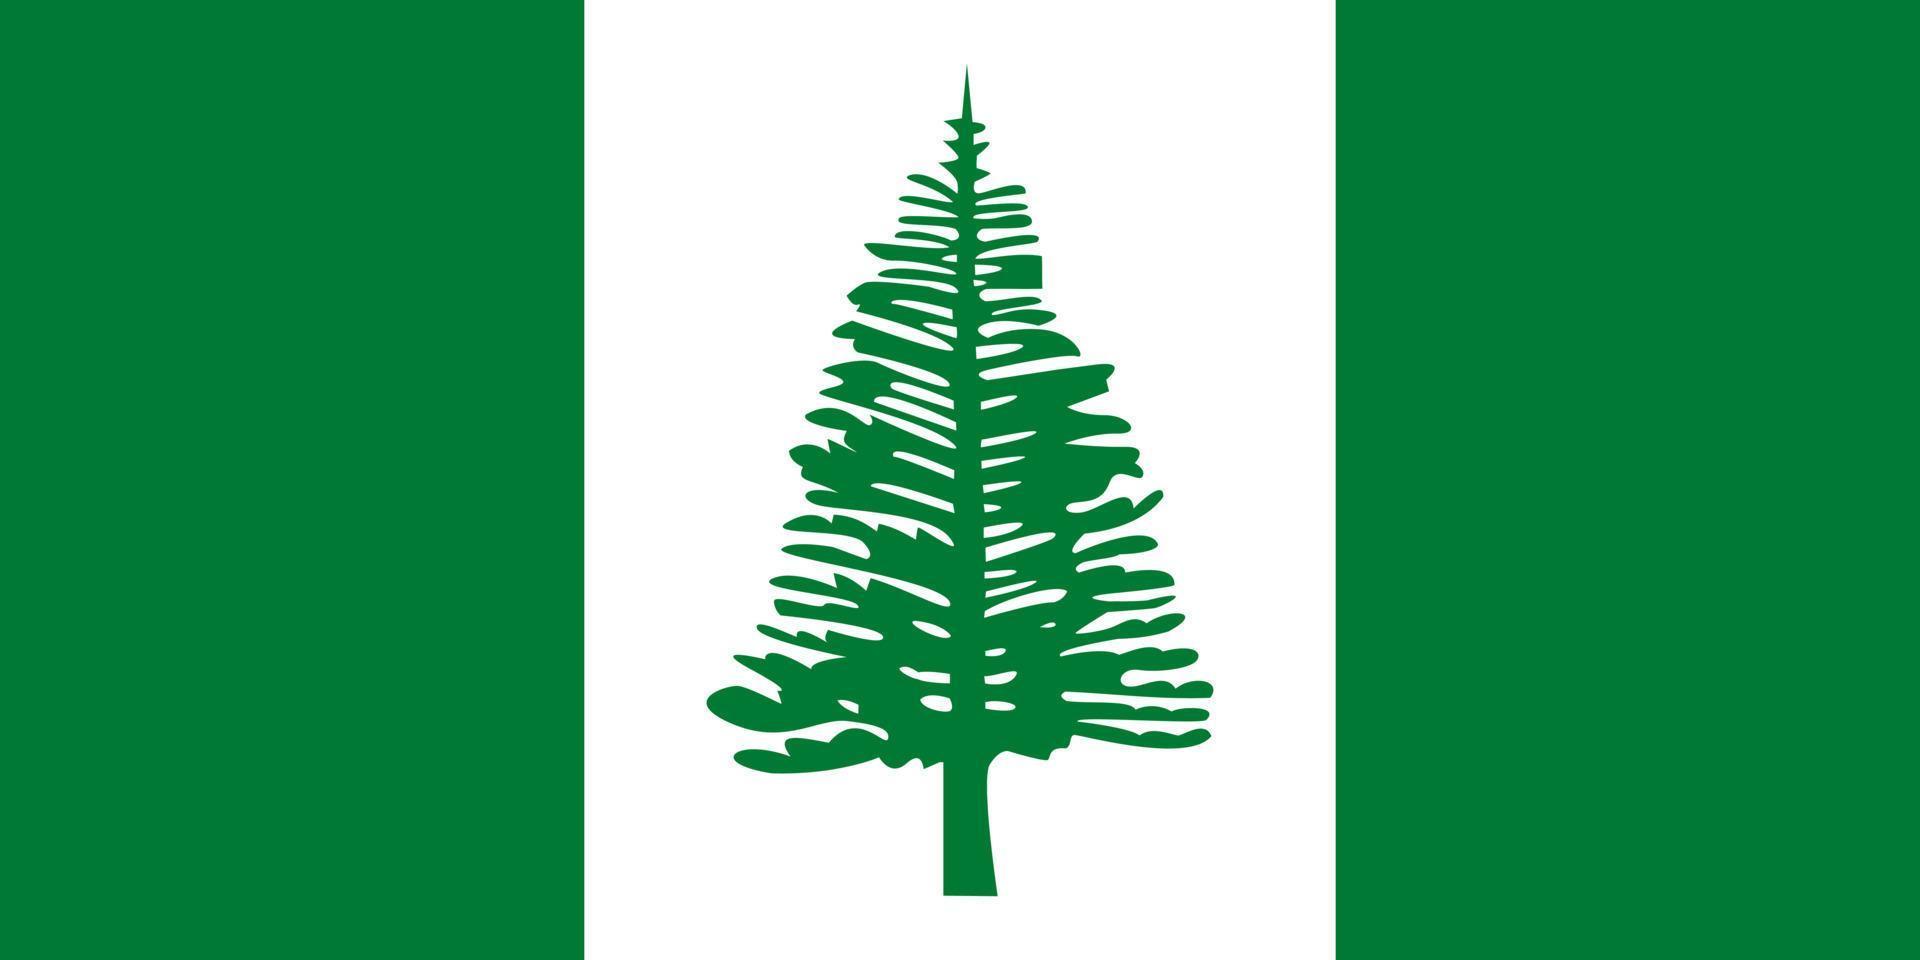 vetor de bandeira da ilha norfolk